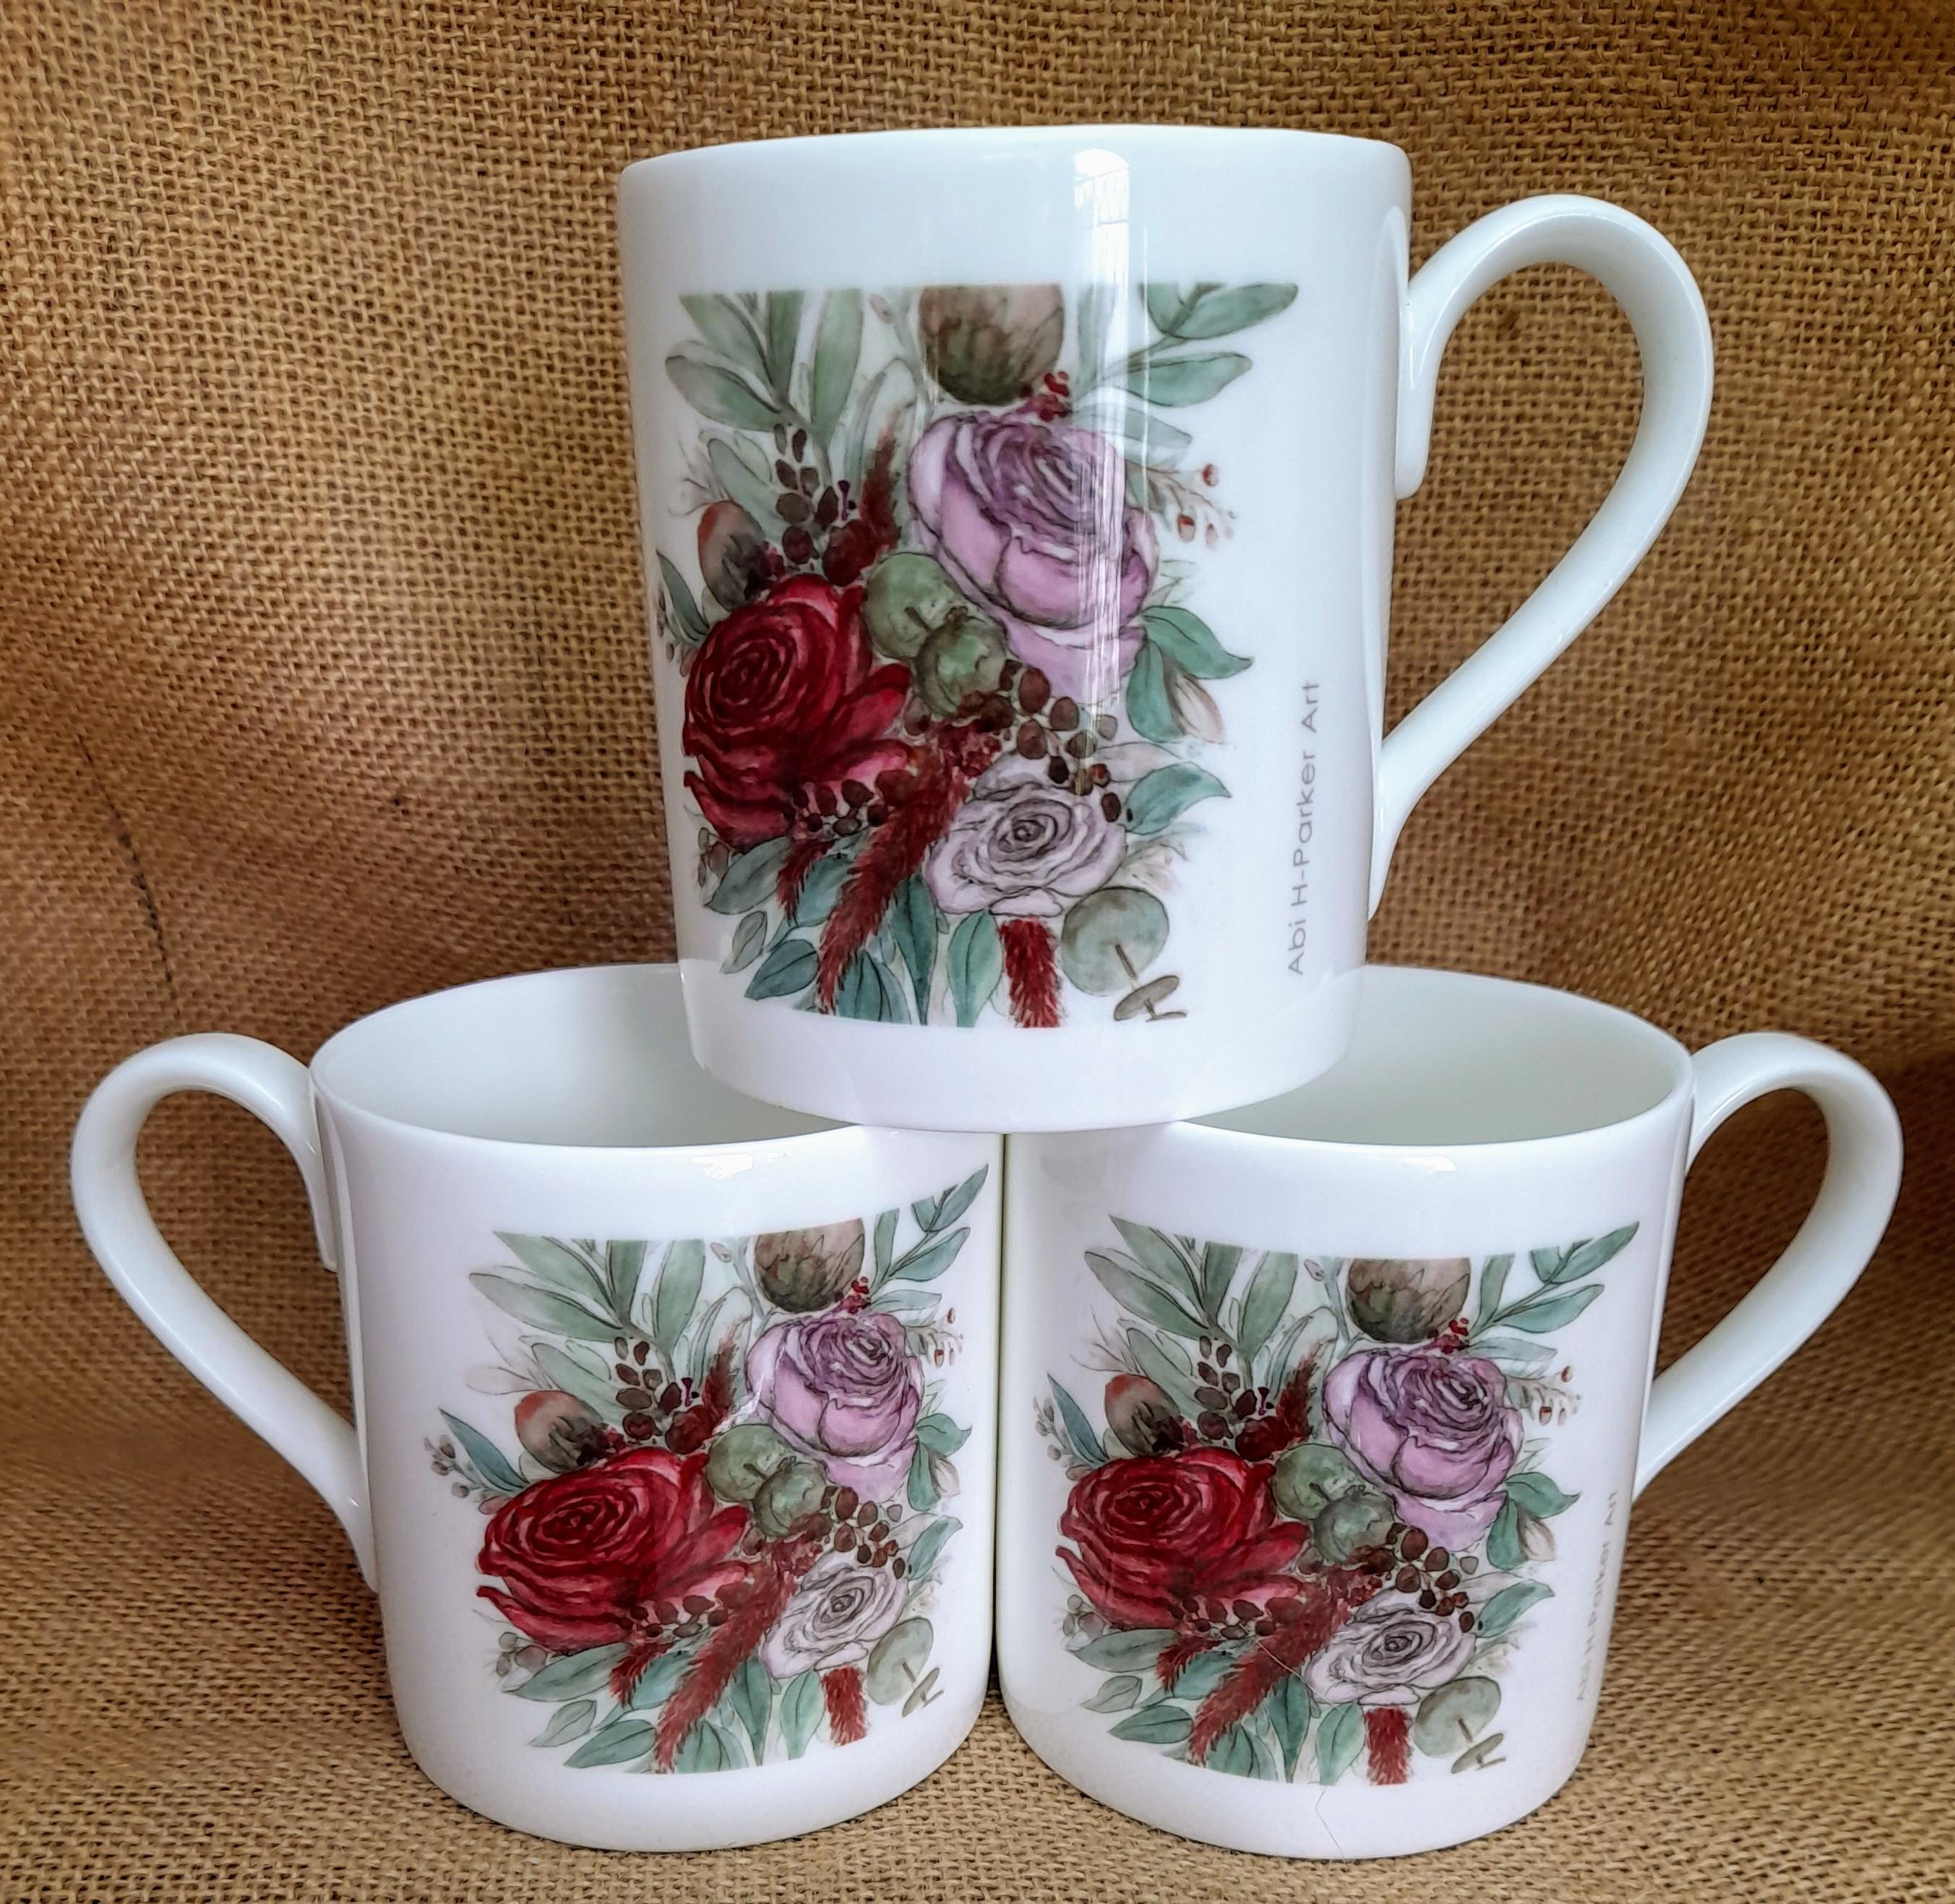 3x Roses & Eucalyptus China Cups